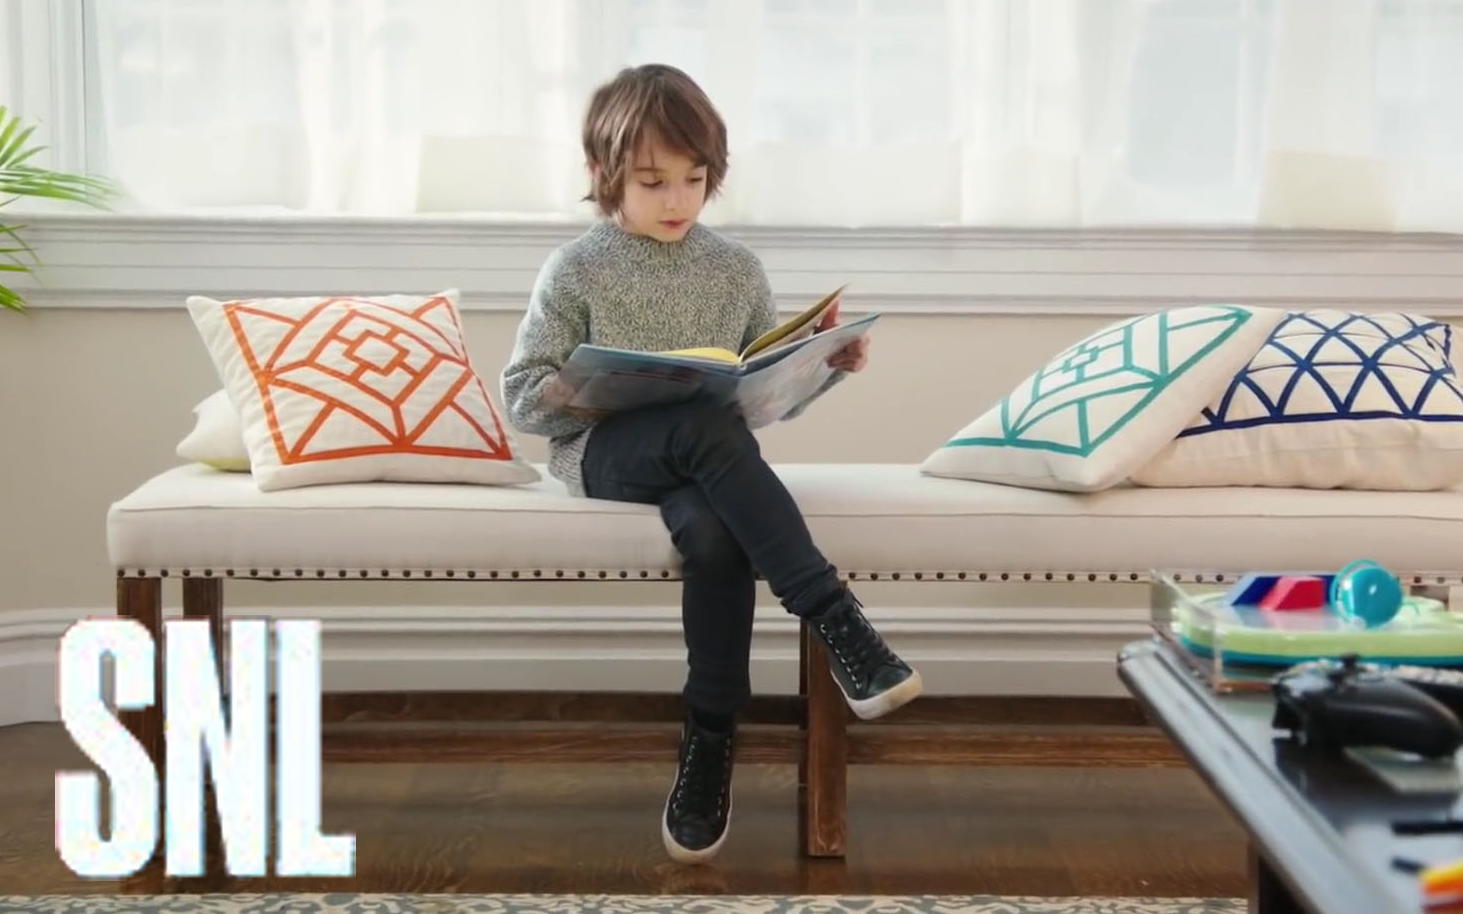 【SNL假广告】【英字】多愁善感的孩子必备玩具